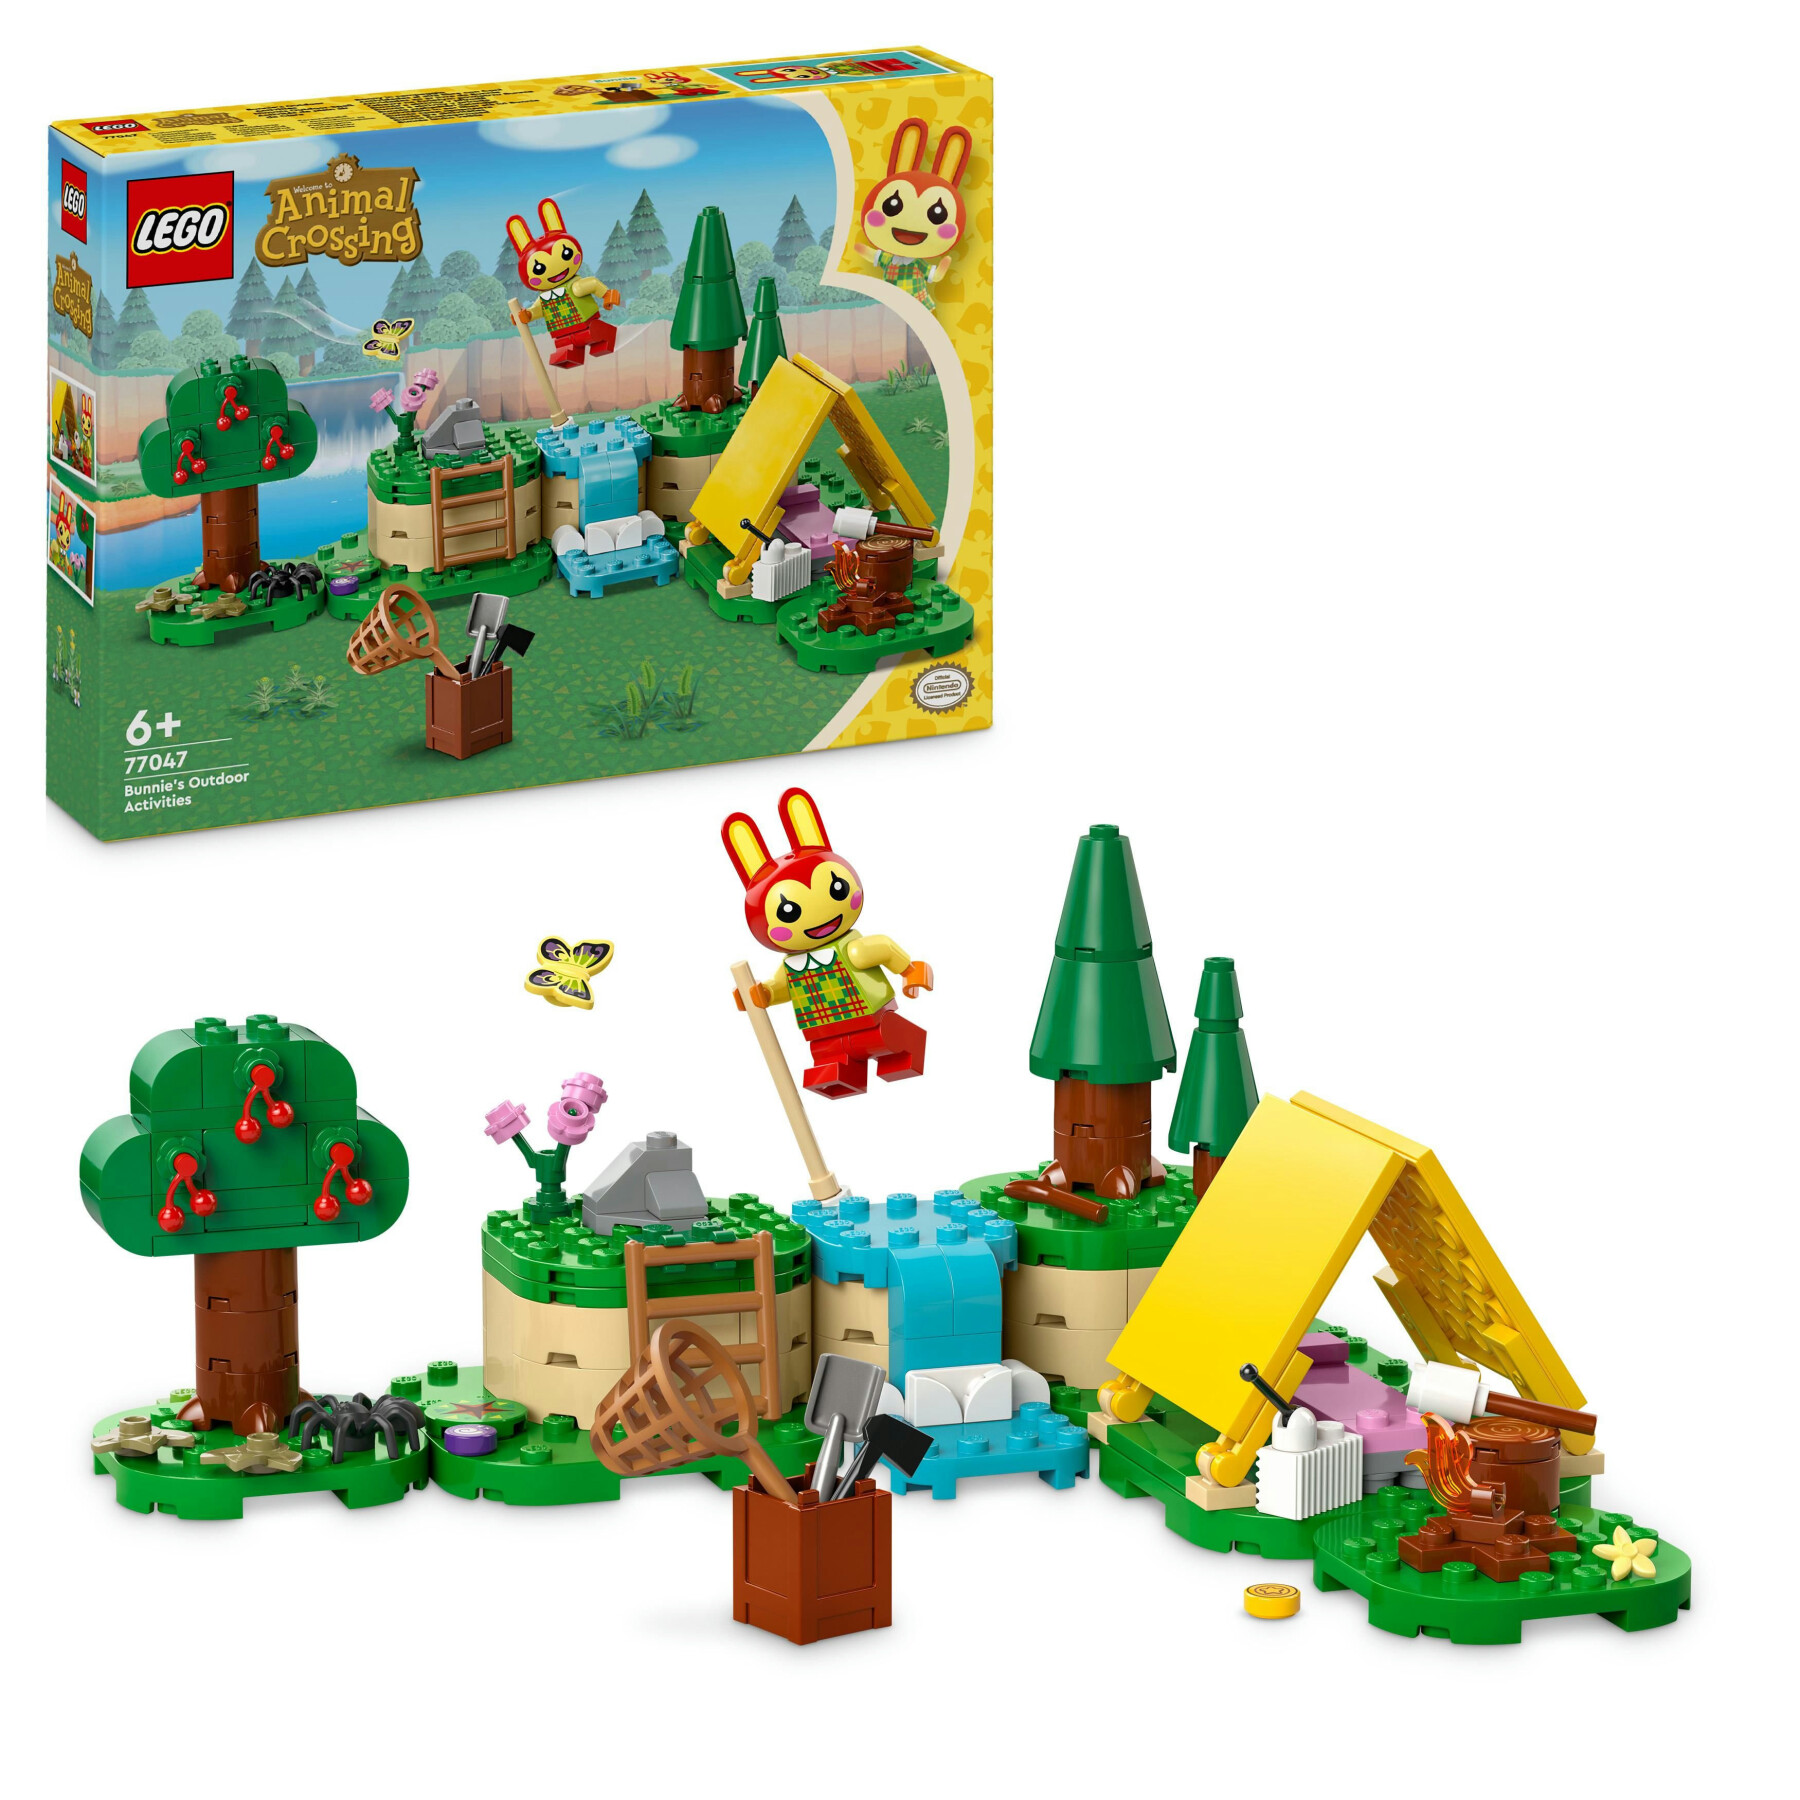 Lego animal crossing 77047 bonny in campeggio, giochi creativi per bambini 6+ con coniglietto giocattolo e tenda da costruire - Lego Animal Crossing